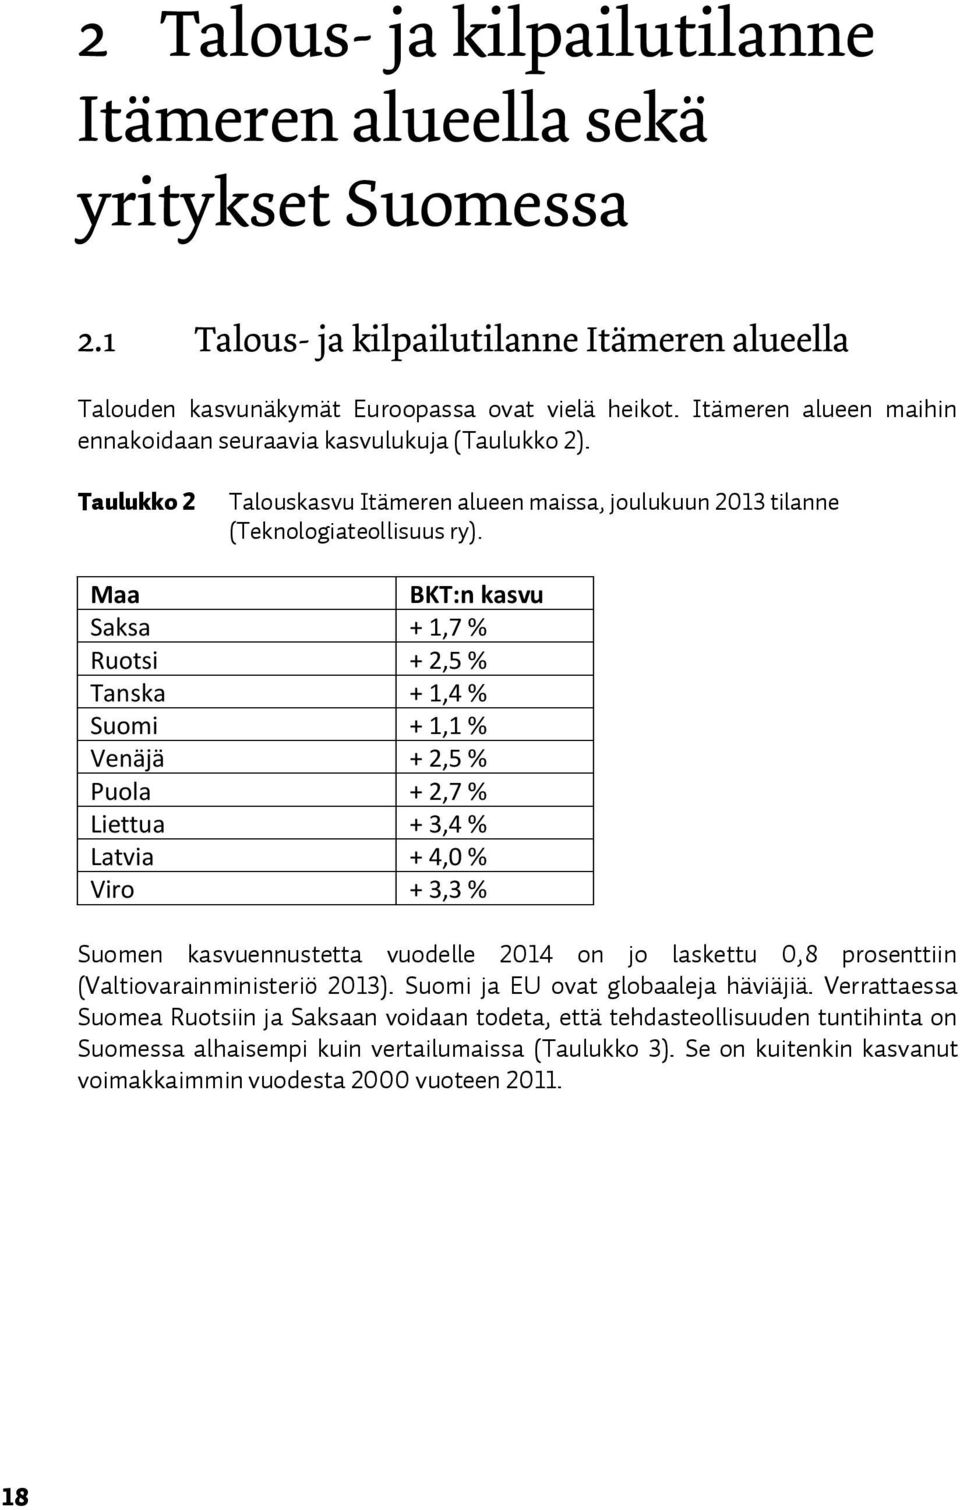 s pfx{z Saksa + 1,7 % Ruotsi + 2,5 % Tanska + 1,4 % Suomi + 1,1 % Venäjä + 2,5 % Puola + 2,7 % Liettua + 3,4 % Latvia + 4,0 % Viro + 3,3 % puomen kasvuennustetta vuodelle OMNQ on jo laskettu MIU